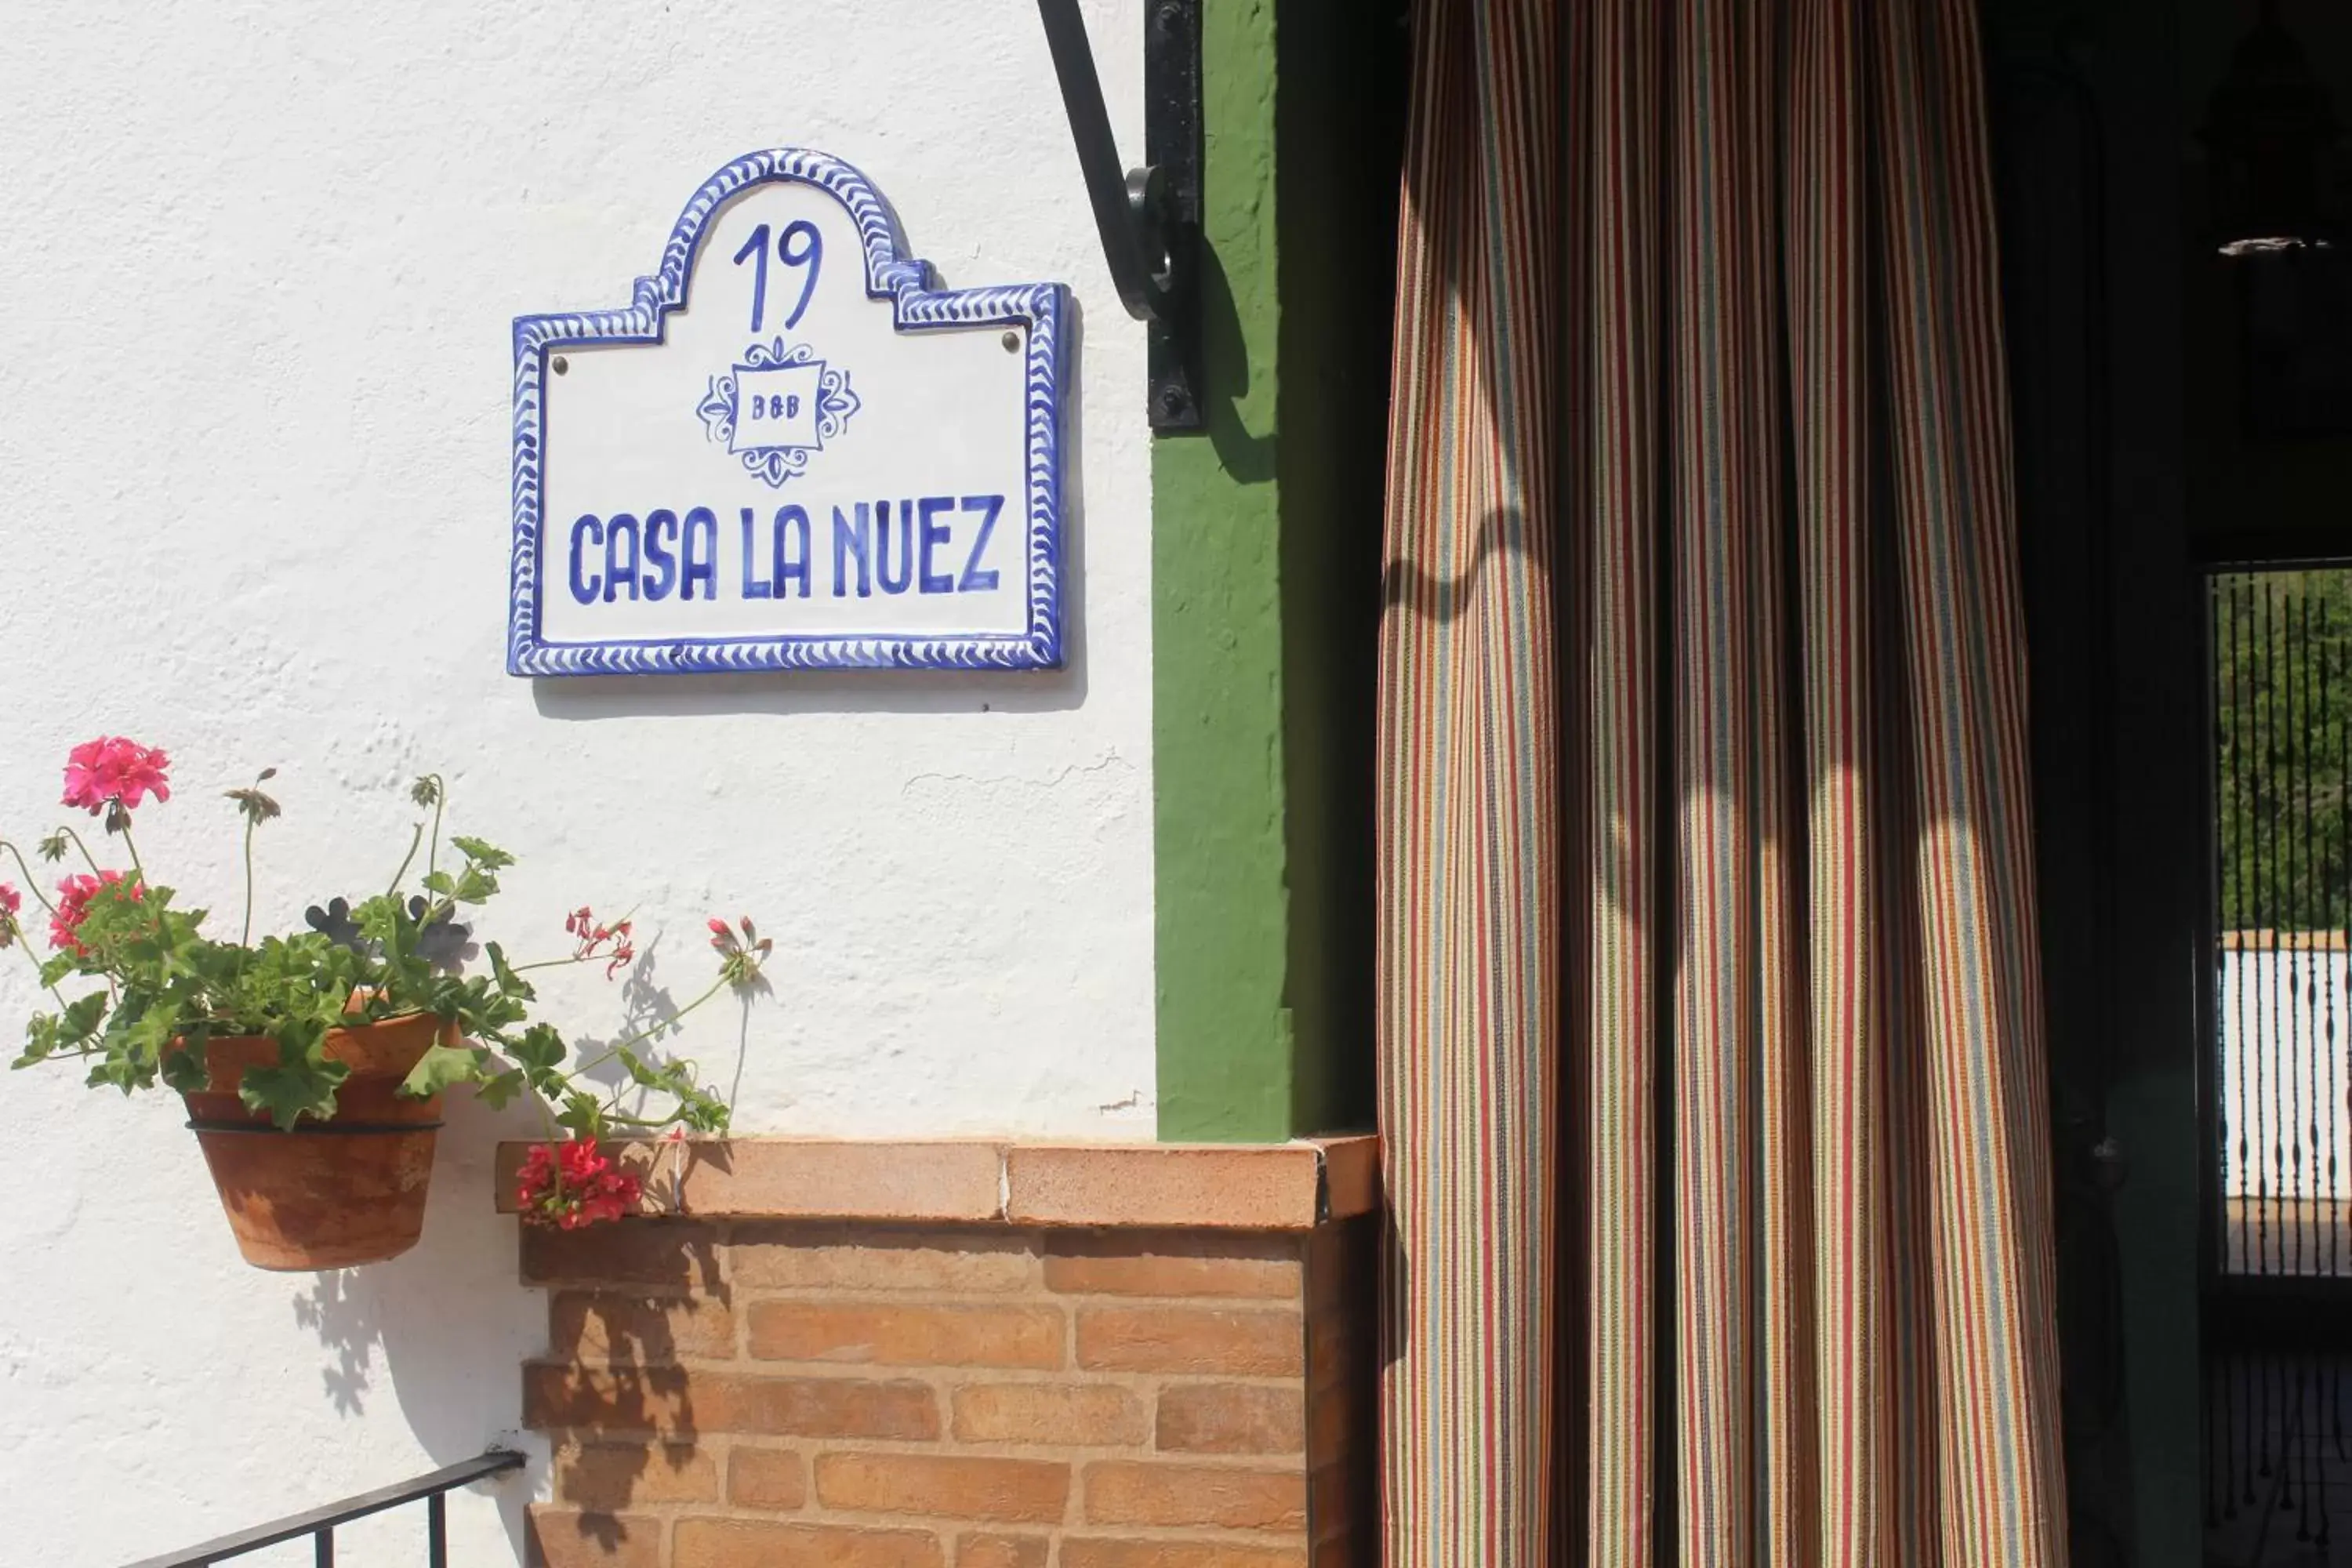 Property building in Casa La Nuez